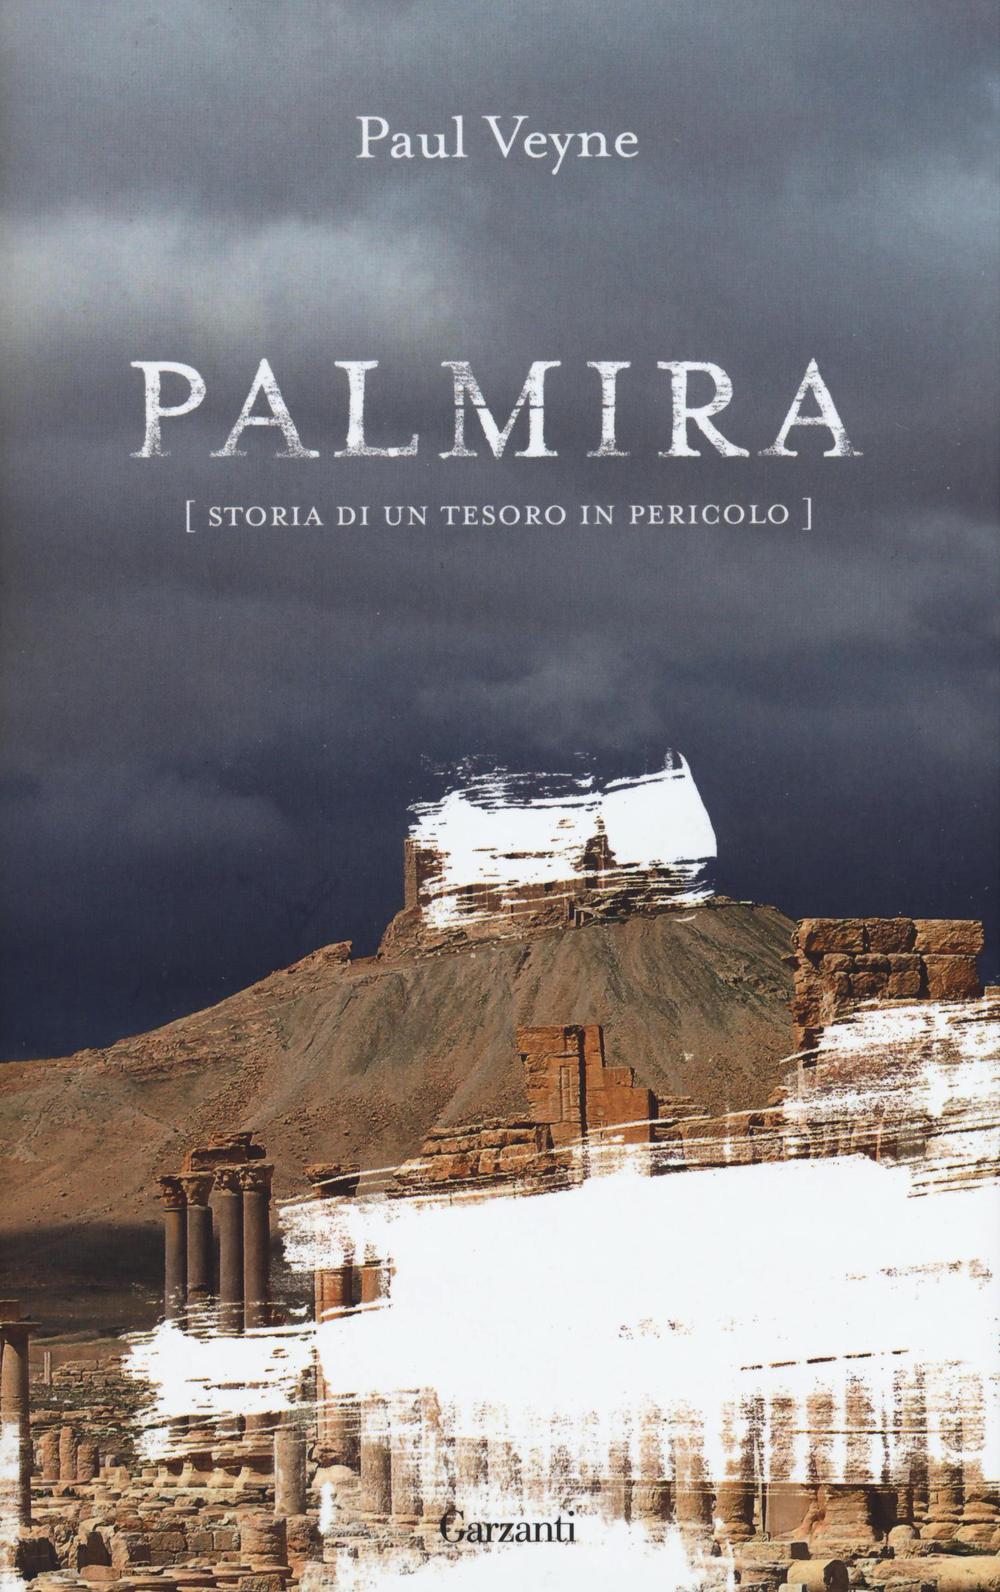 Palmira. Storia di un tesoro in pericolo